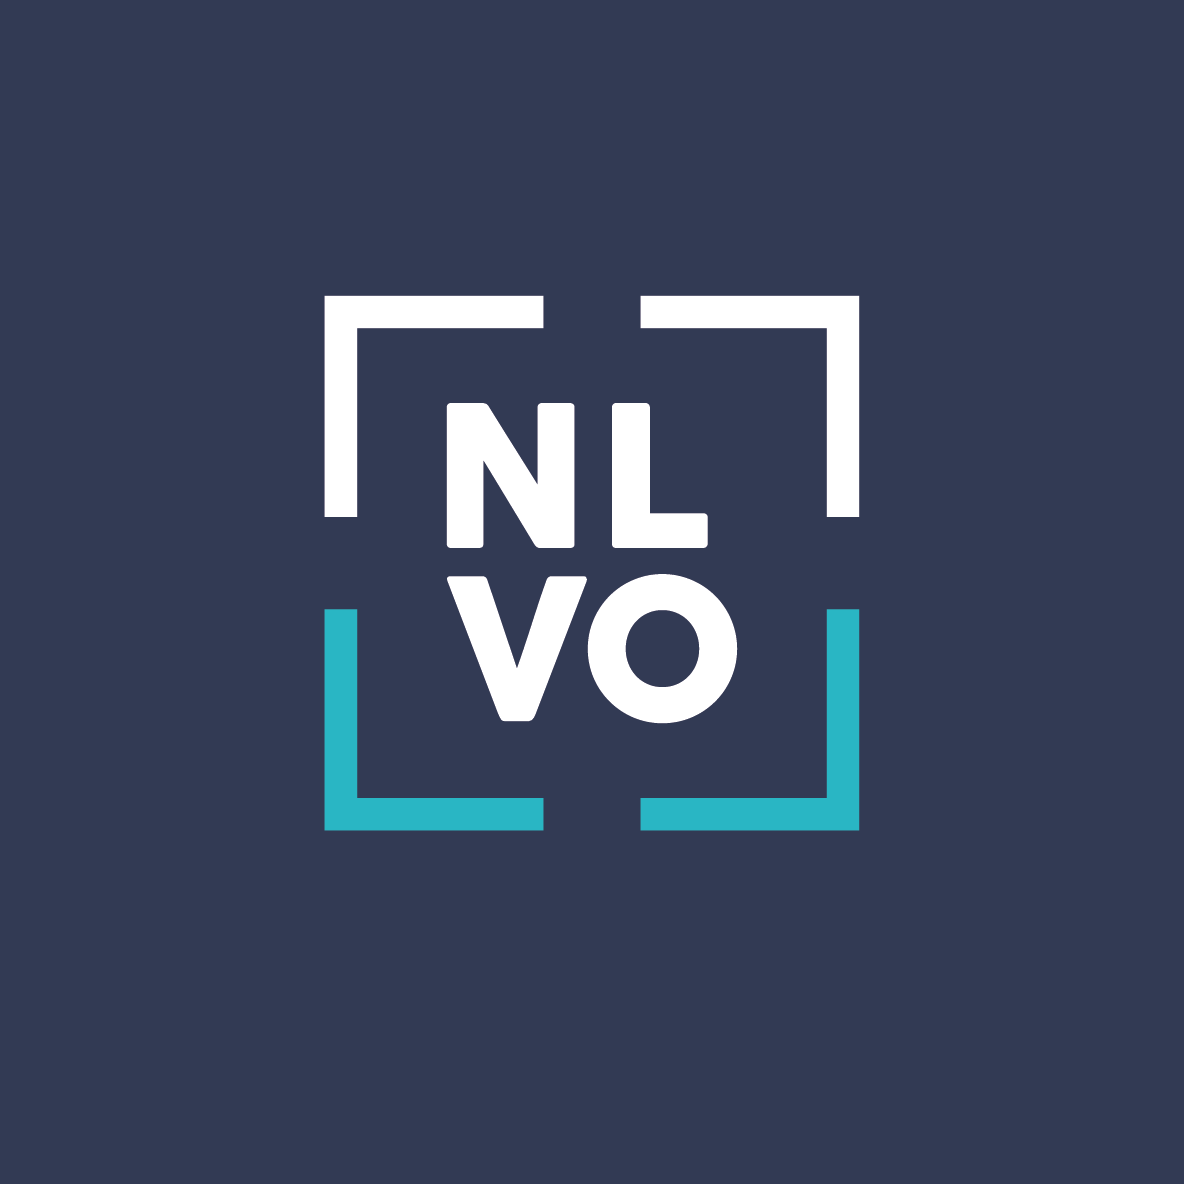 NLVO logo on dark blue background